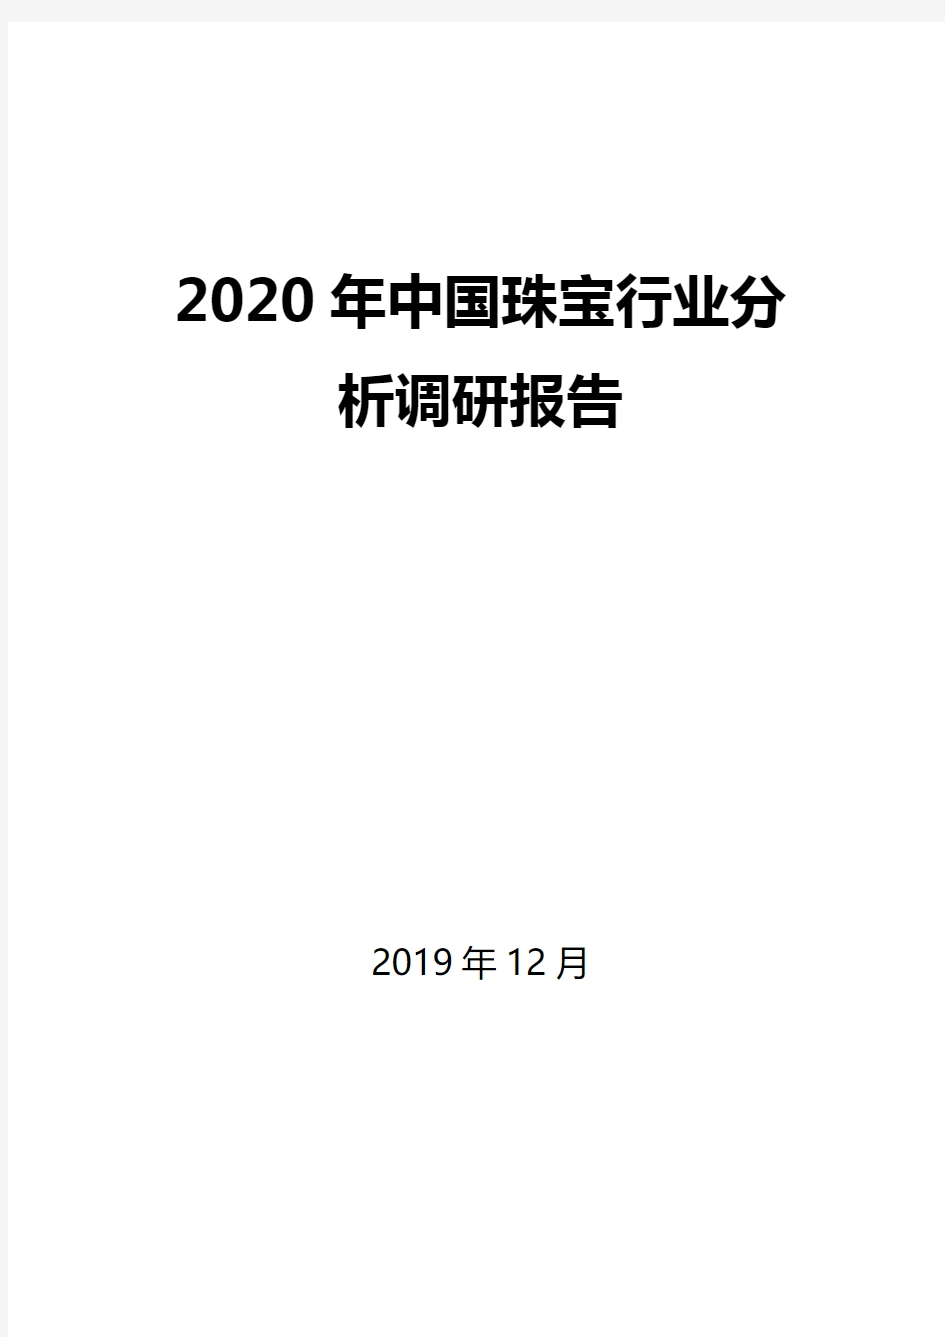 2020年中国珠宝行业分析调研报告